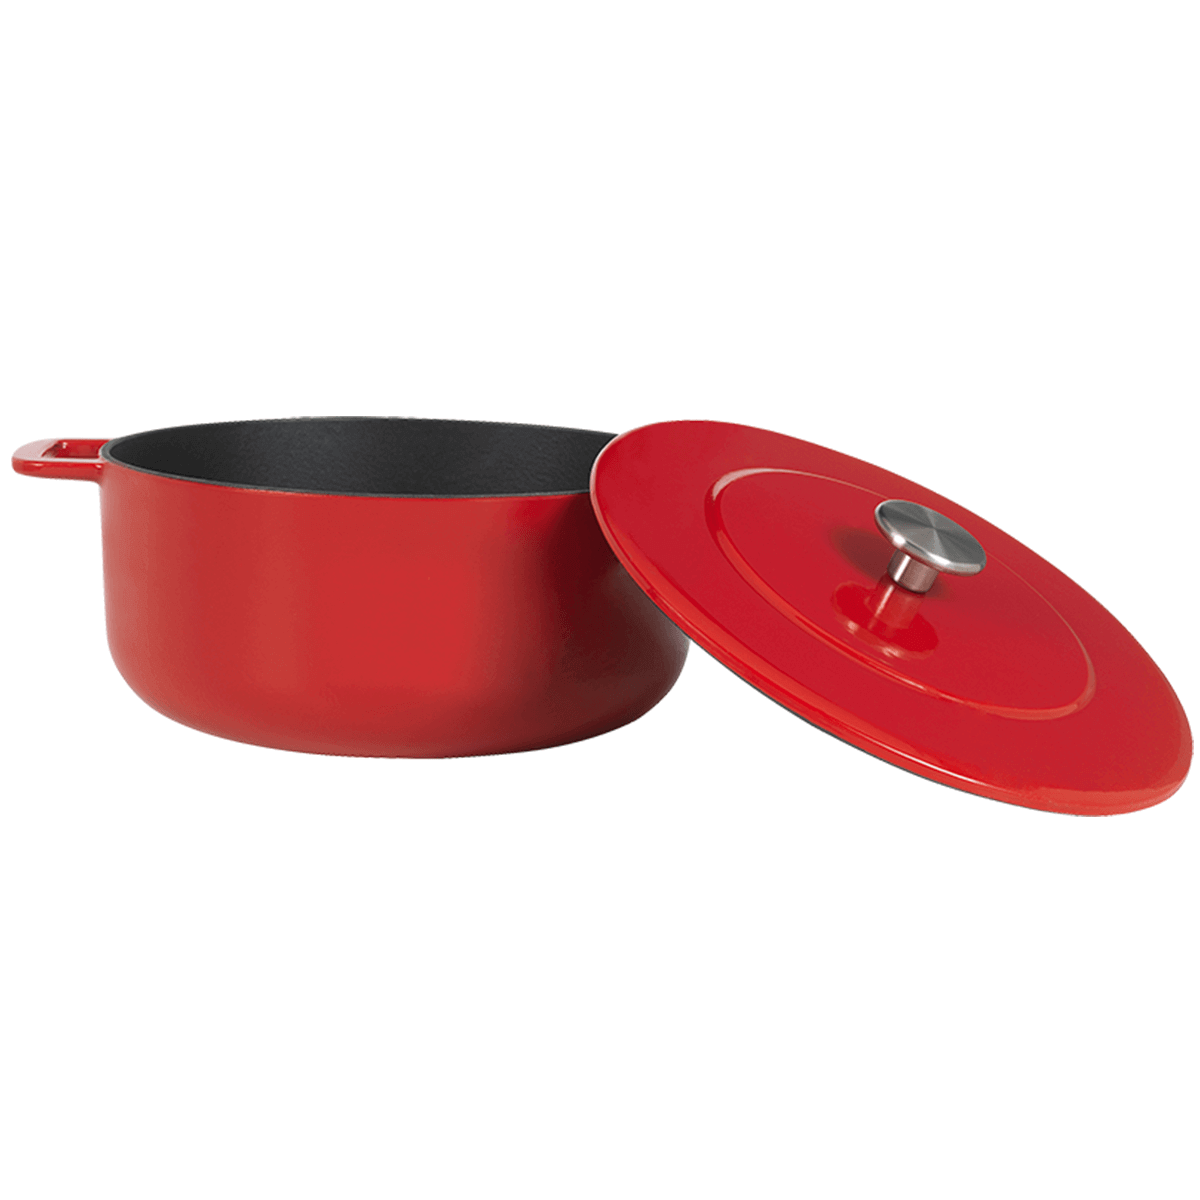 Combekk Sous-Chef Dutch Oven RED - Ø 24 cm